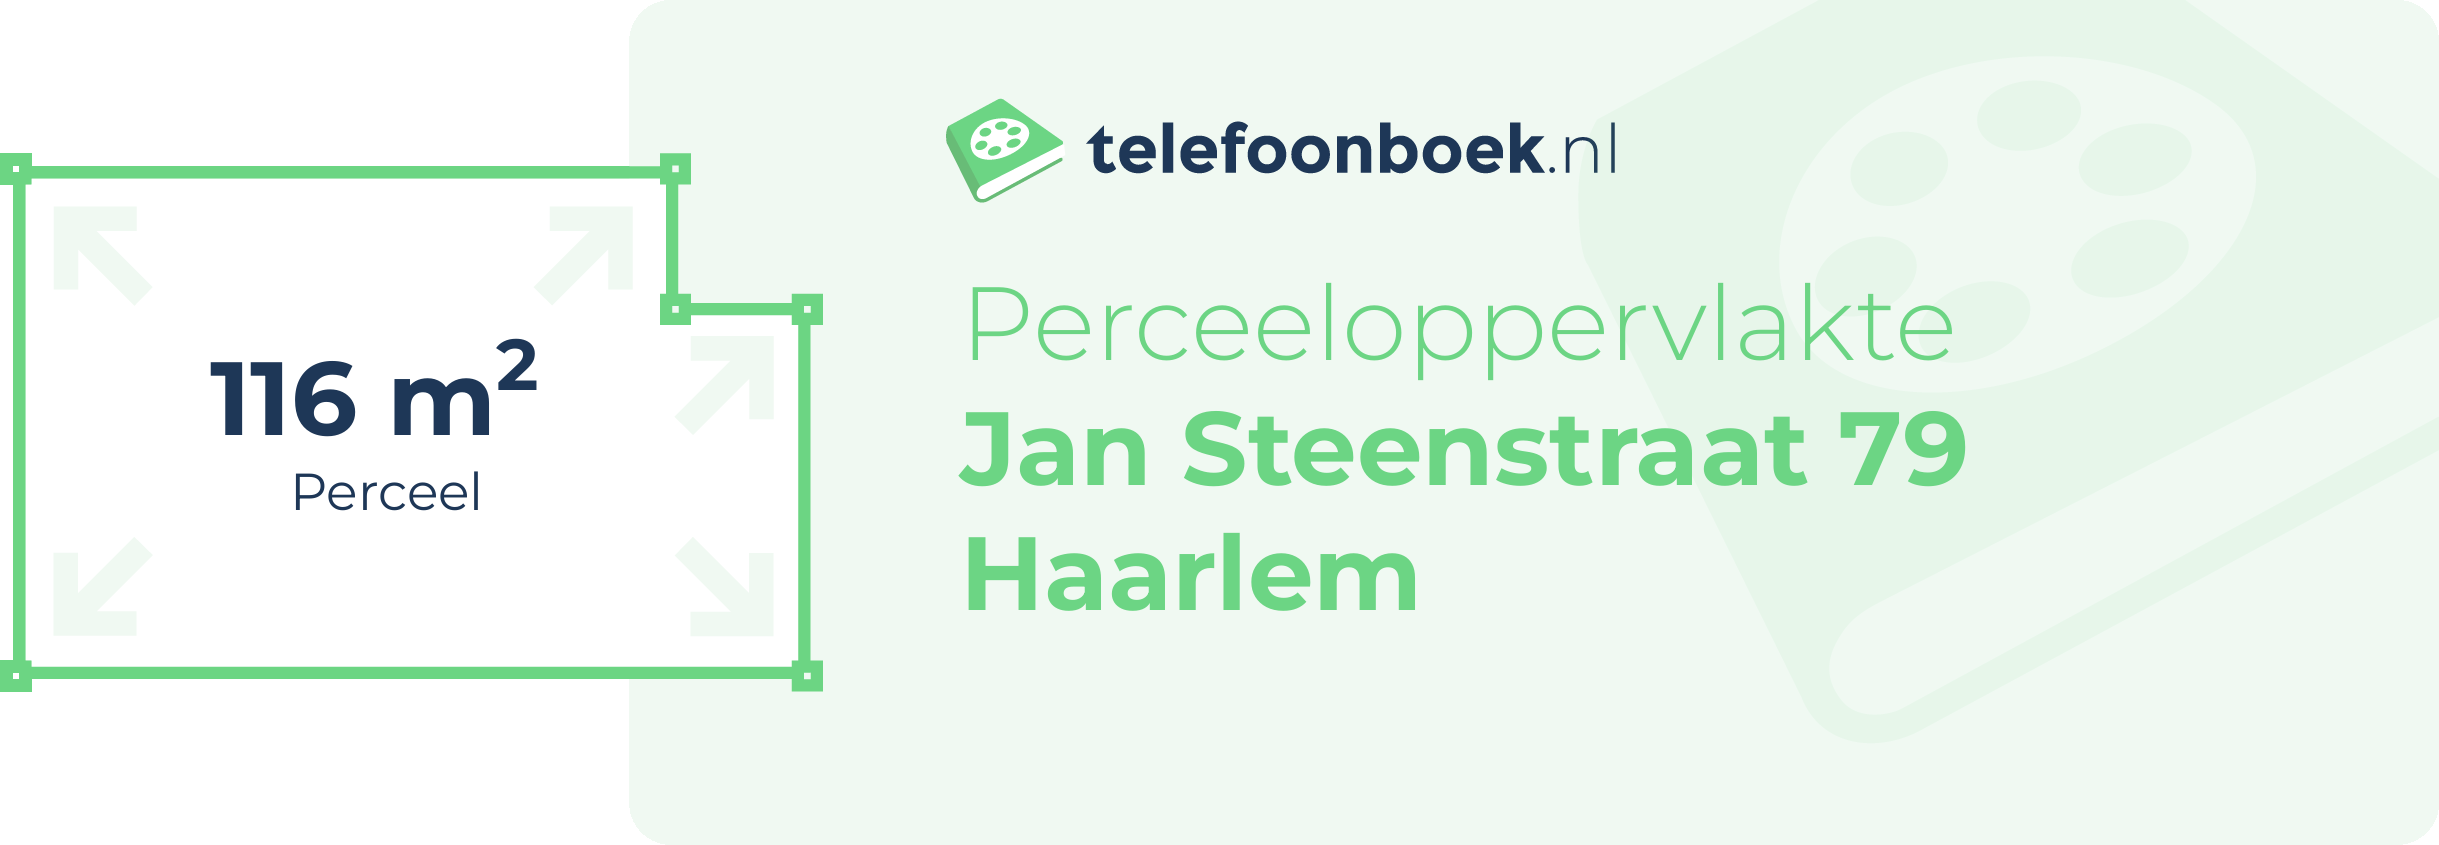 Perceeloppervlakte Jan Steenstraat 79 Haarlem